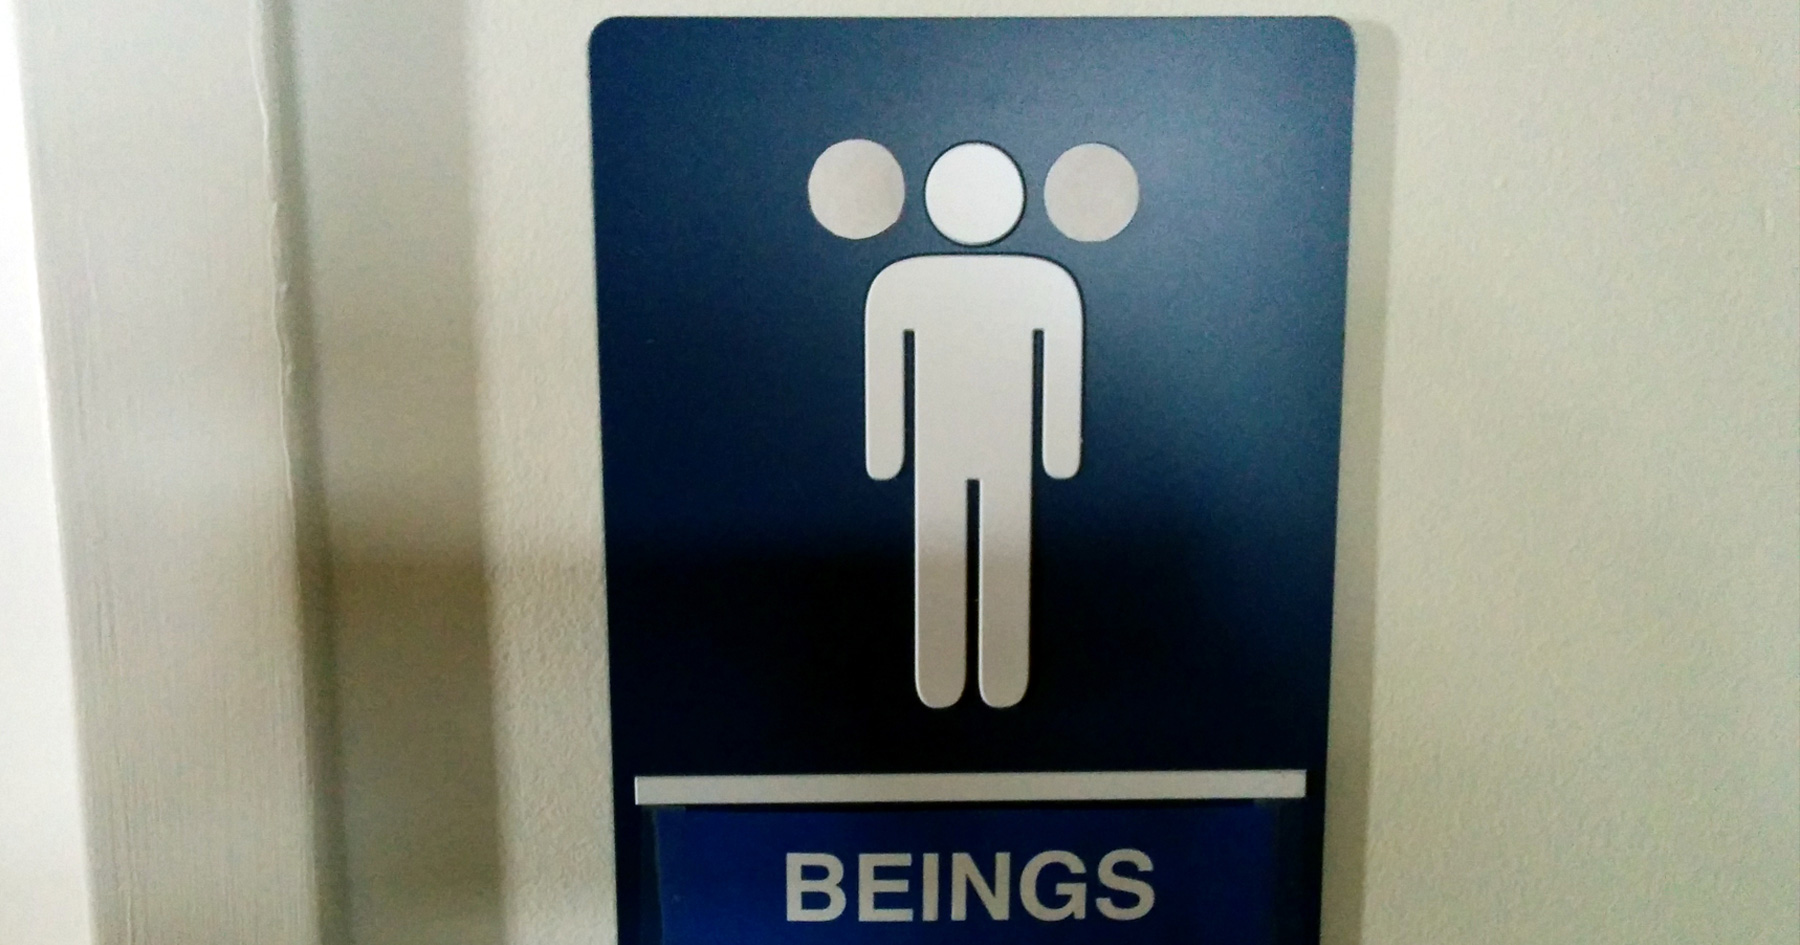 Beings Bathroom